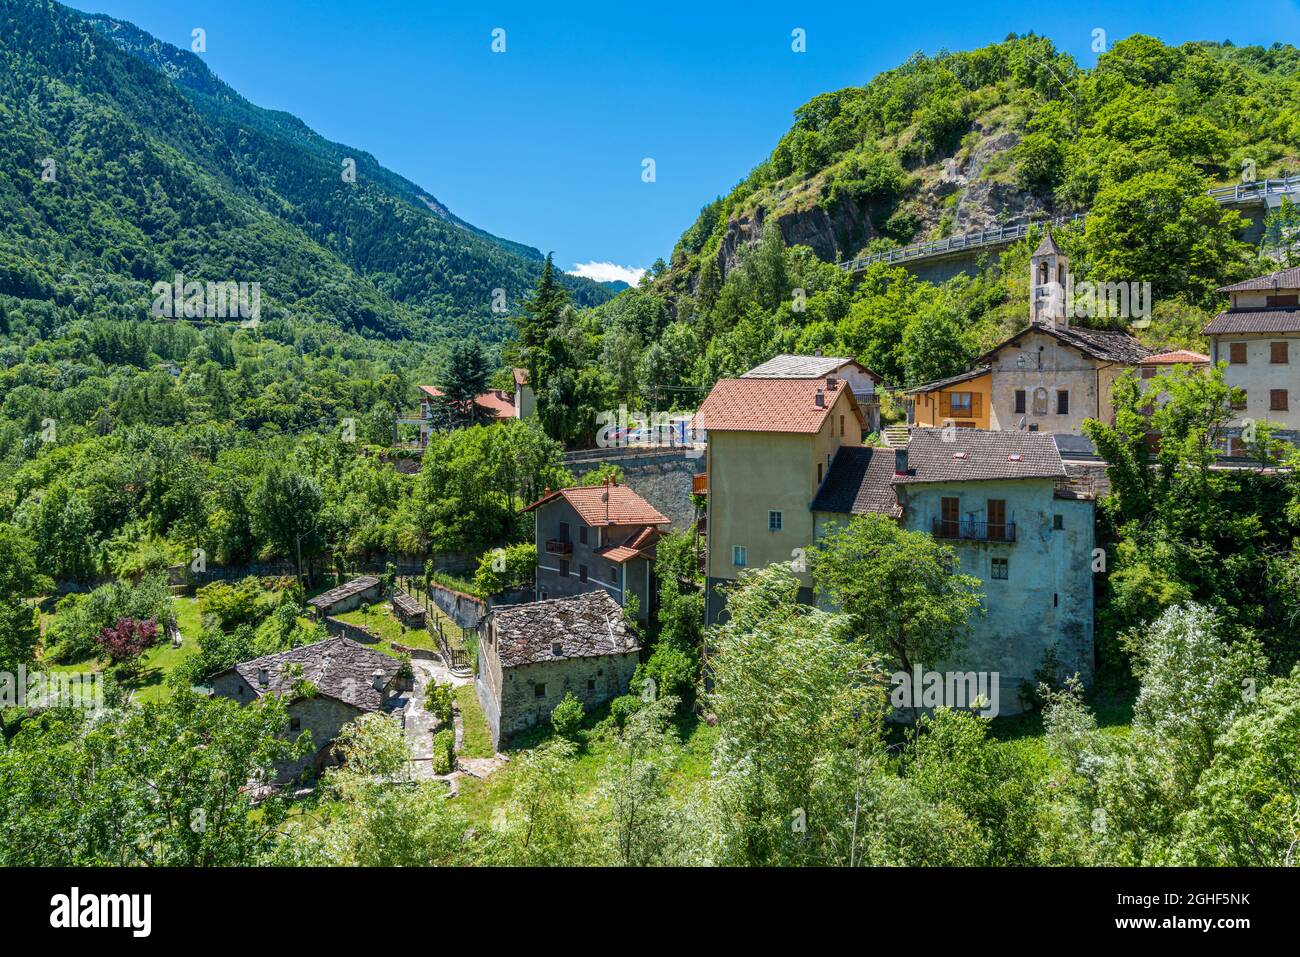 Le village pittoresque d'Exilles, dans la vallée de Susa. Province de Turin, Piémont, nord de l'Italie. Banque D'Images